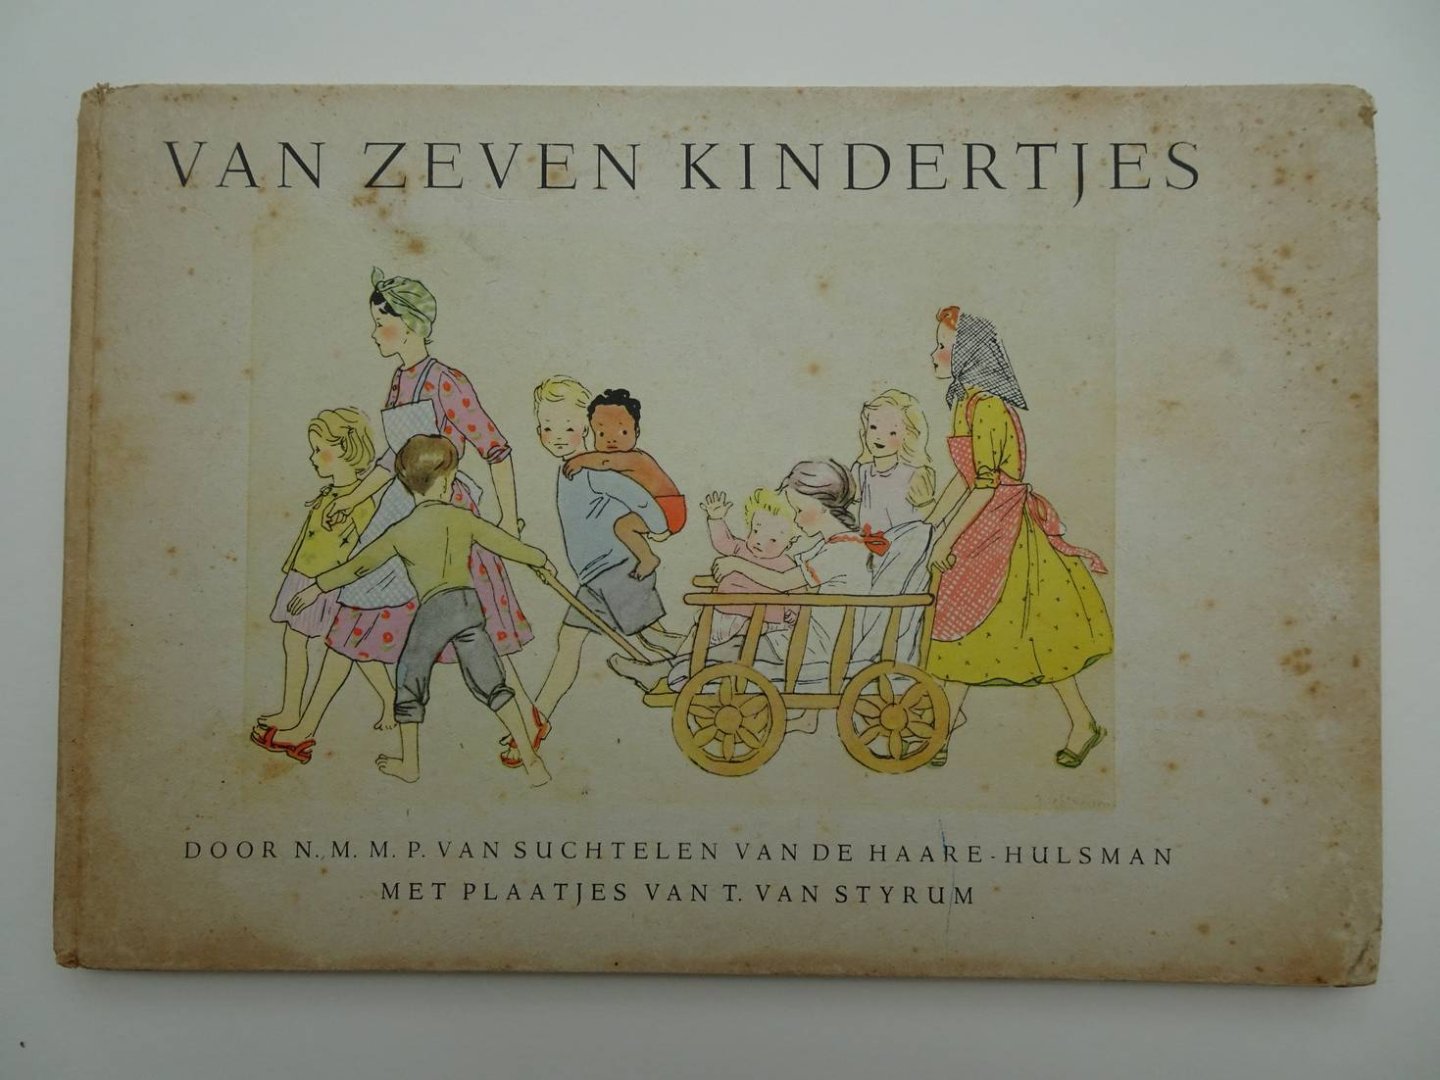 Suchtelen van de Haare-Hulsman, N.M.M.P. van & T. van Styrum. - Van zeven kindertjes.